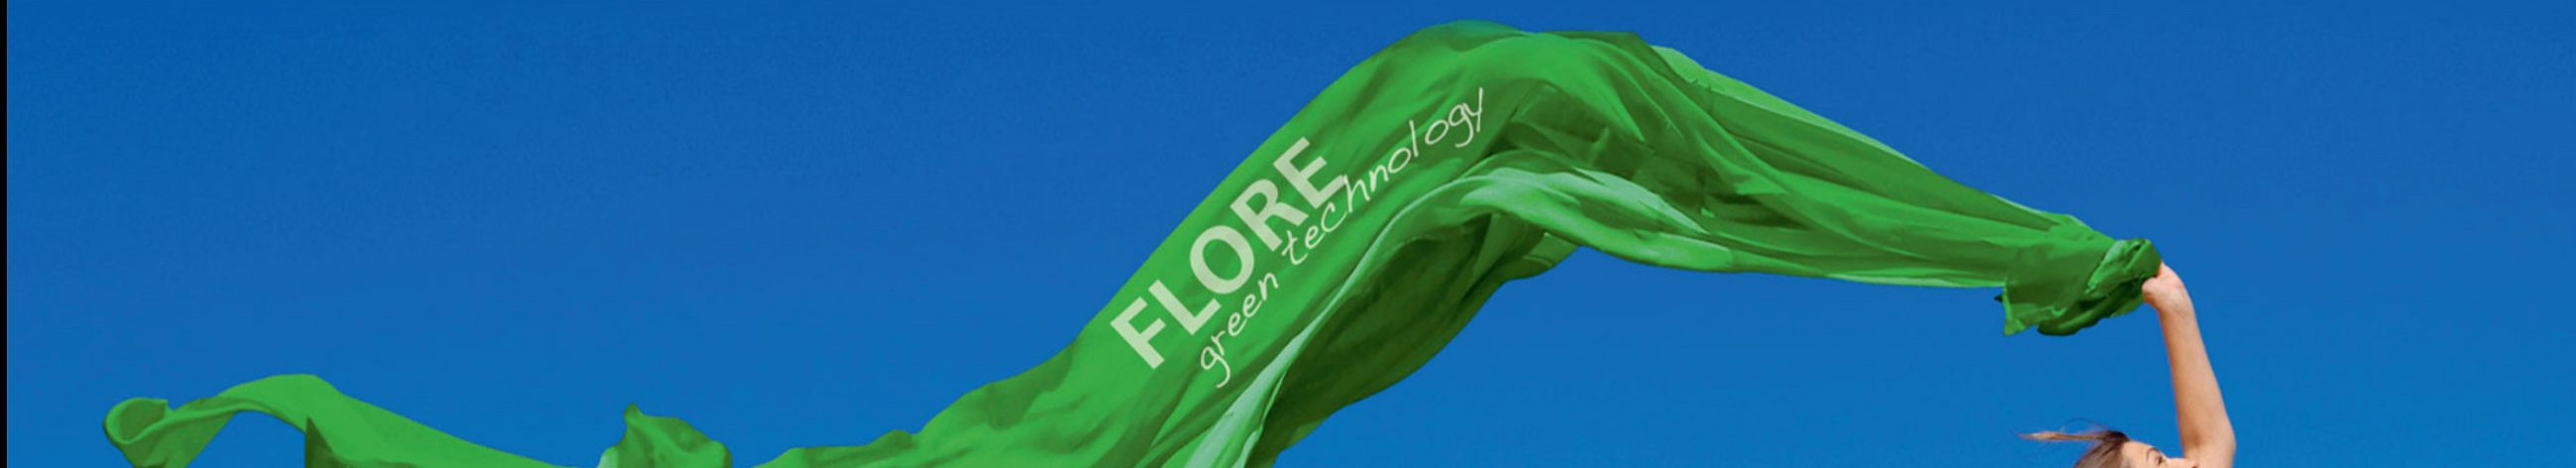 Flore Keemia pakub kõrgekvaliteedilisi ja loodussõbralikke puhastus- ja hooldusaineid, mis võimaldavad teil oma kodu tõhusalt ja ohutult puhastada.